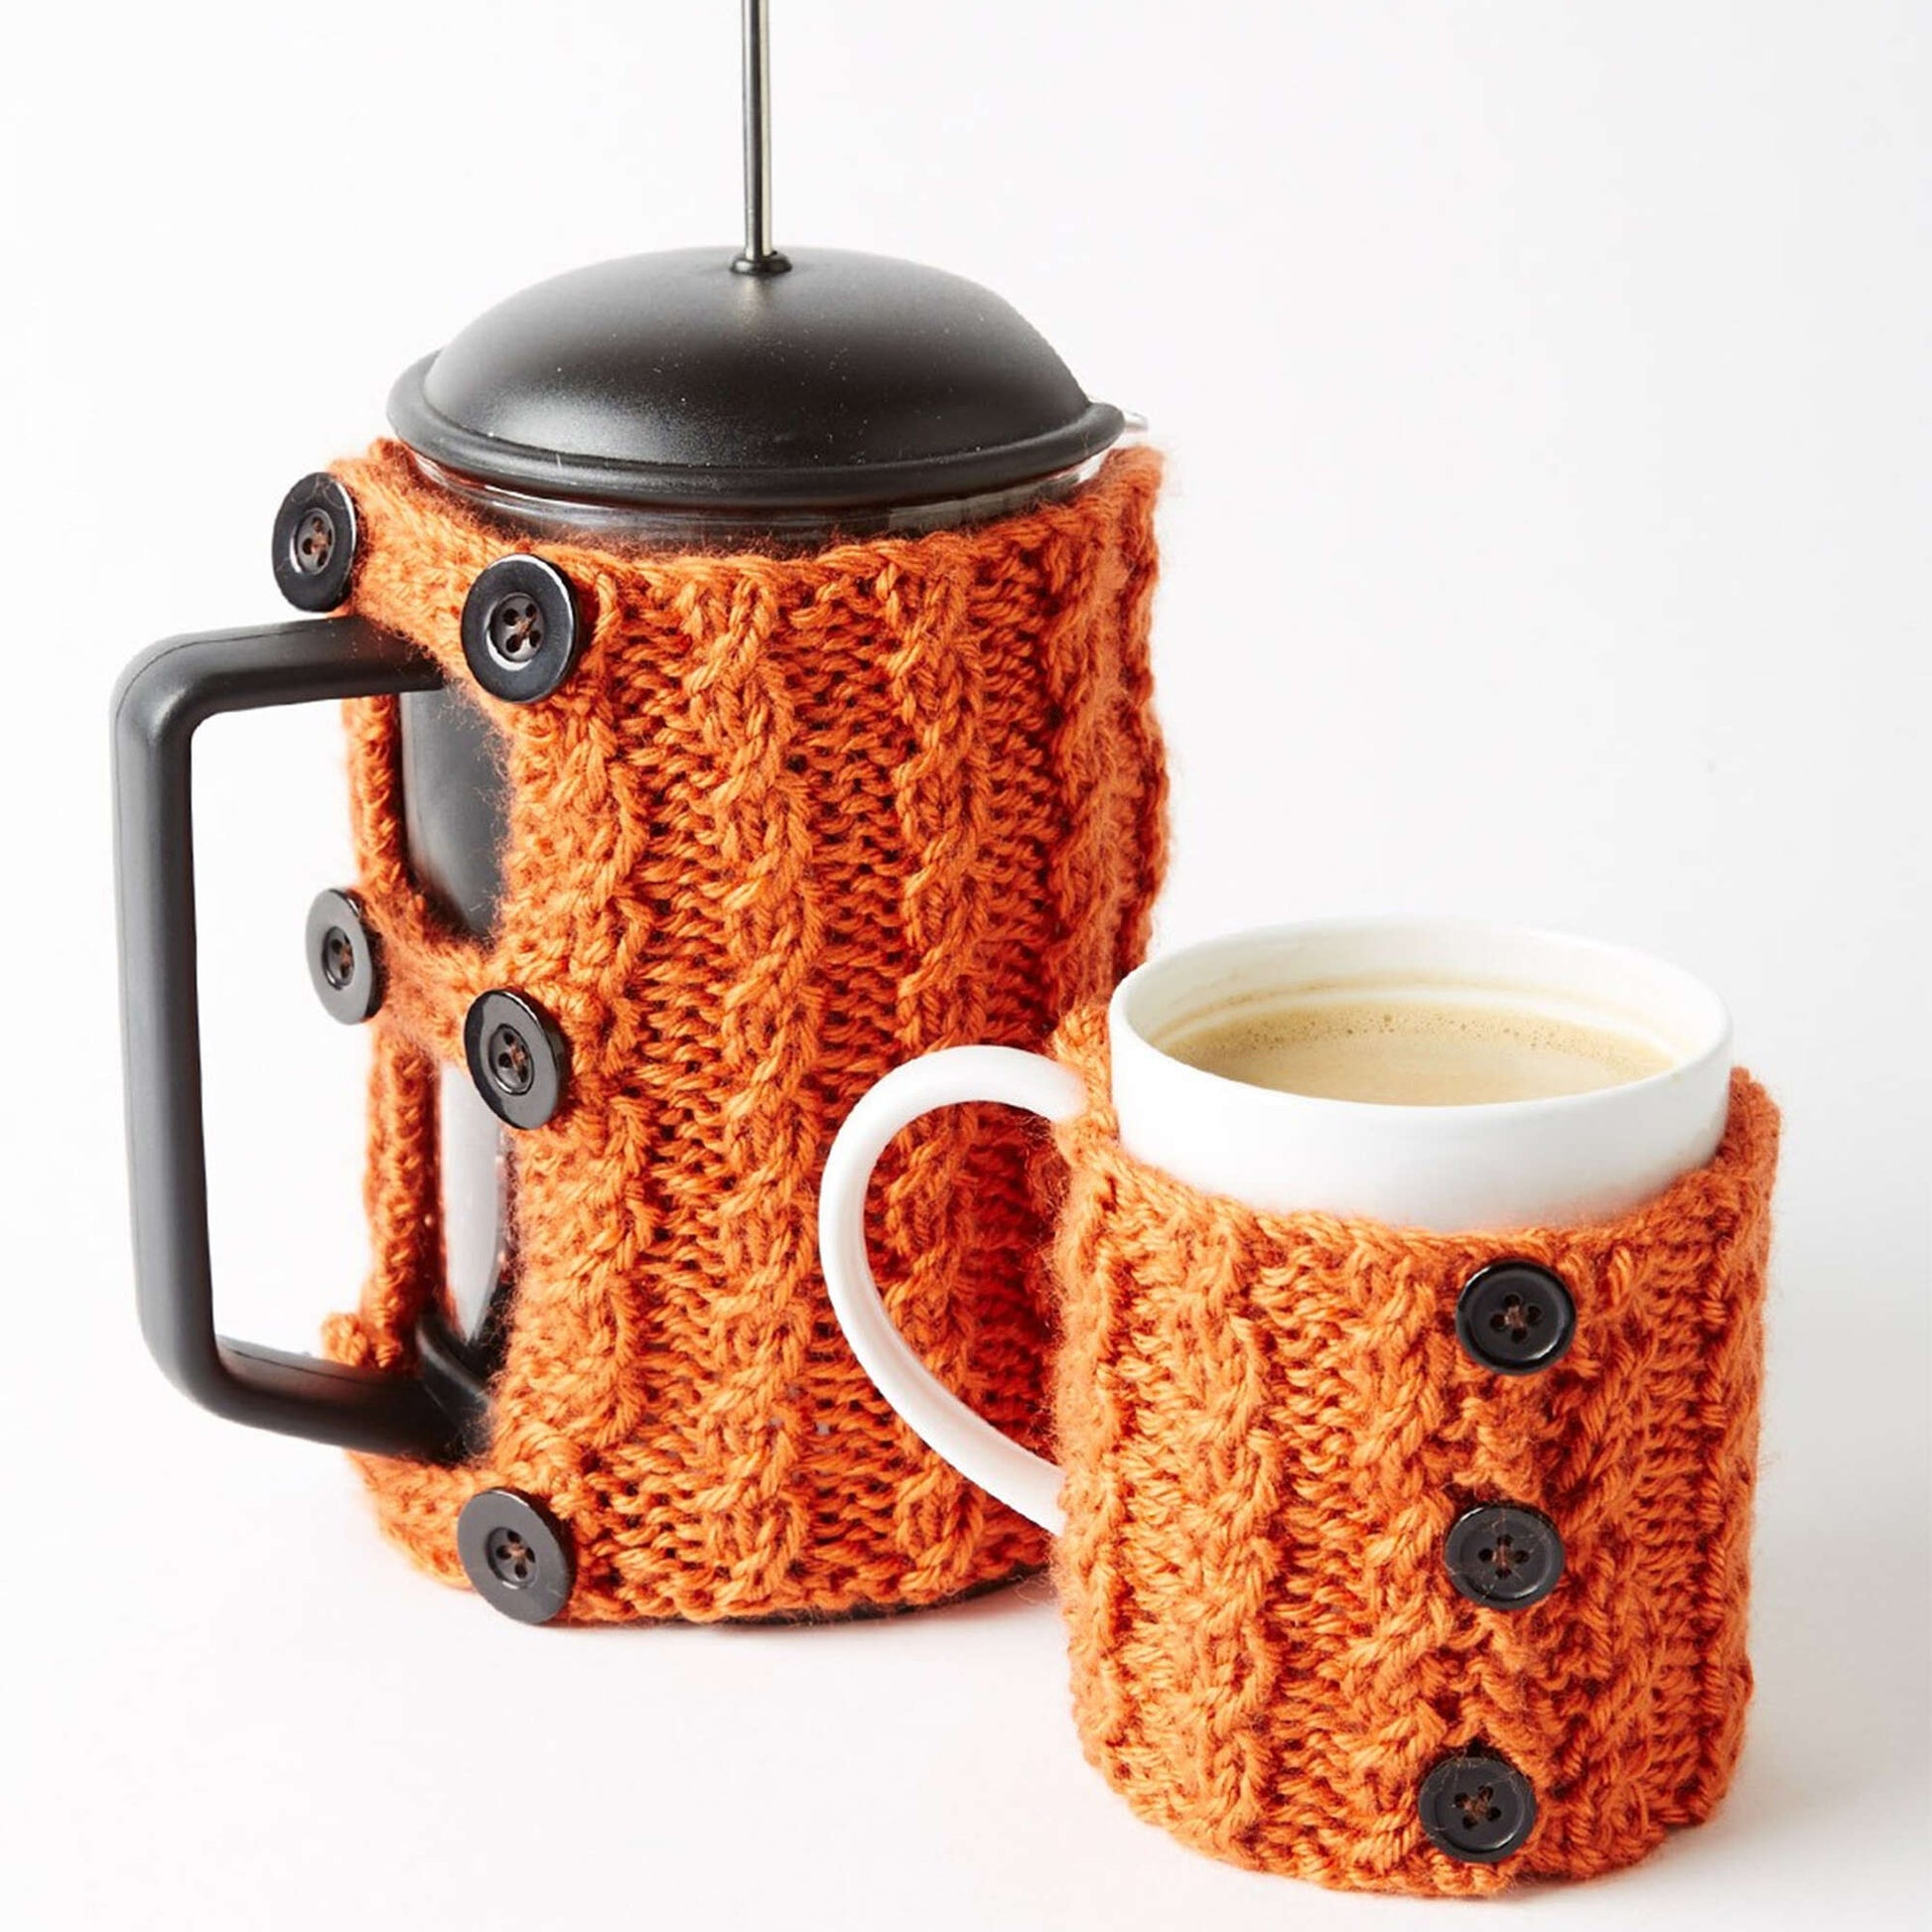 Free Caron Coffee Press And Mug Cozies Knit Pattern